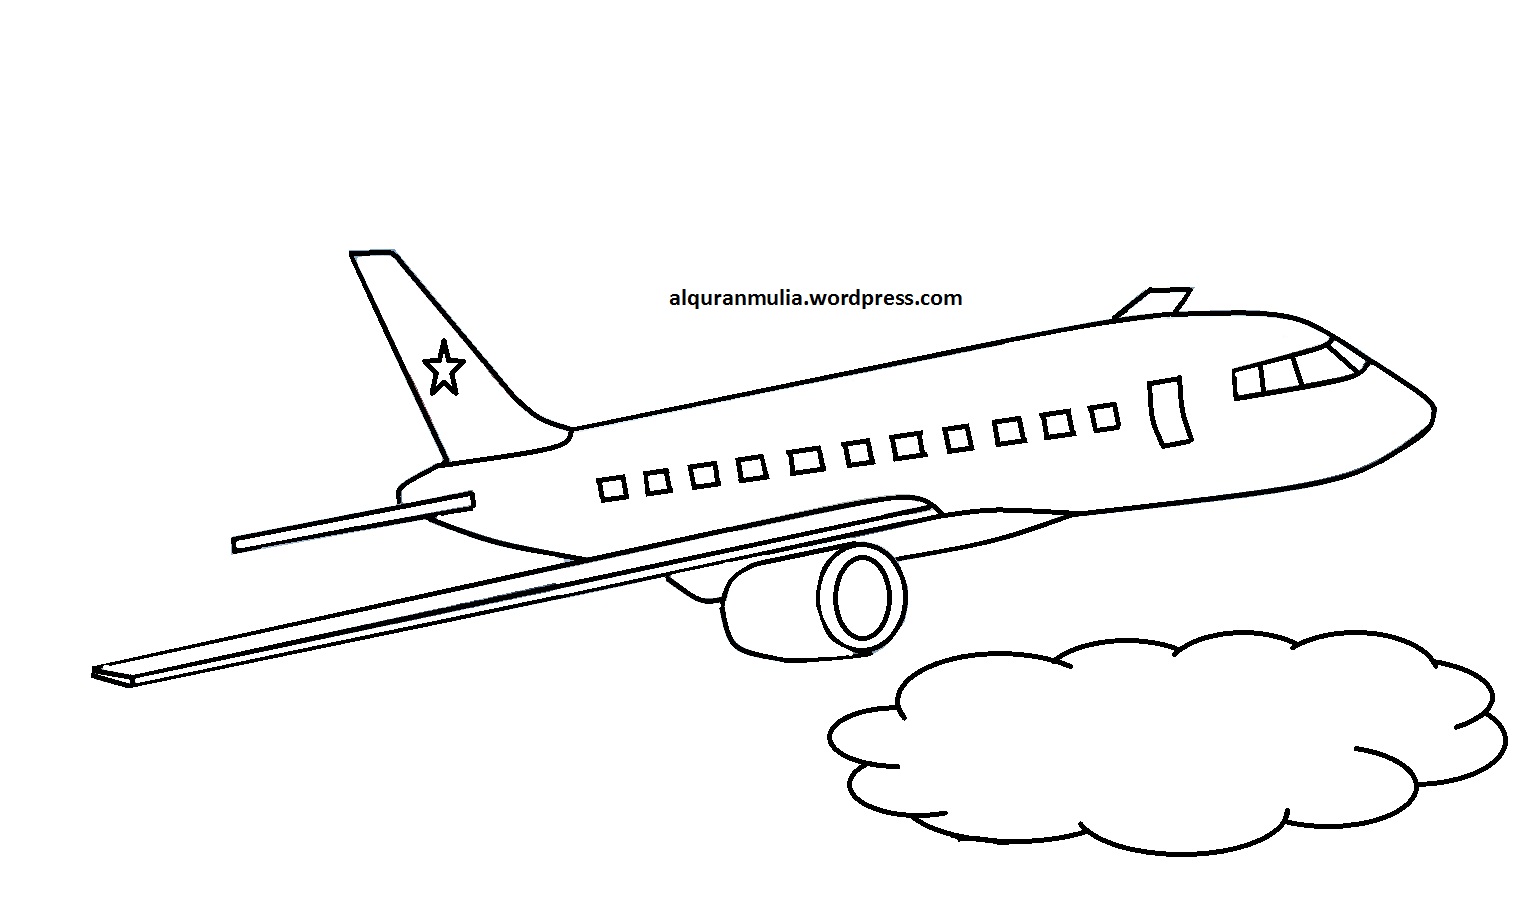 86 Gambar Animasi Pesawat Hitam Putih Keren Cikimmcom